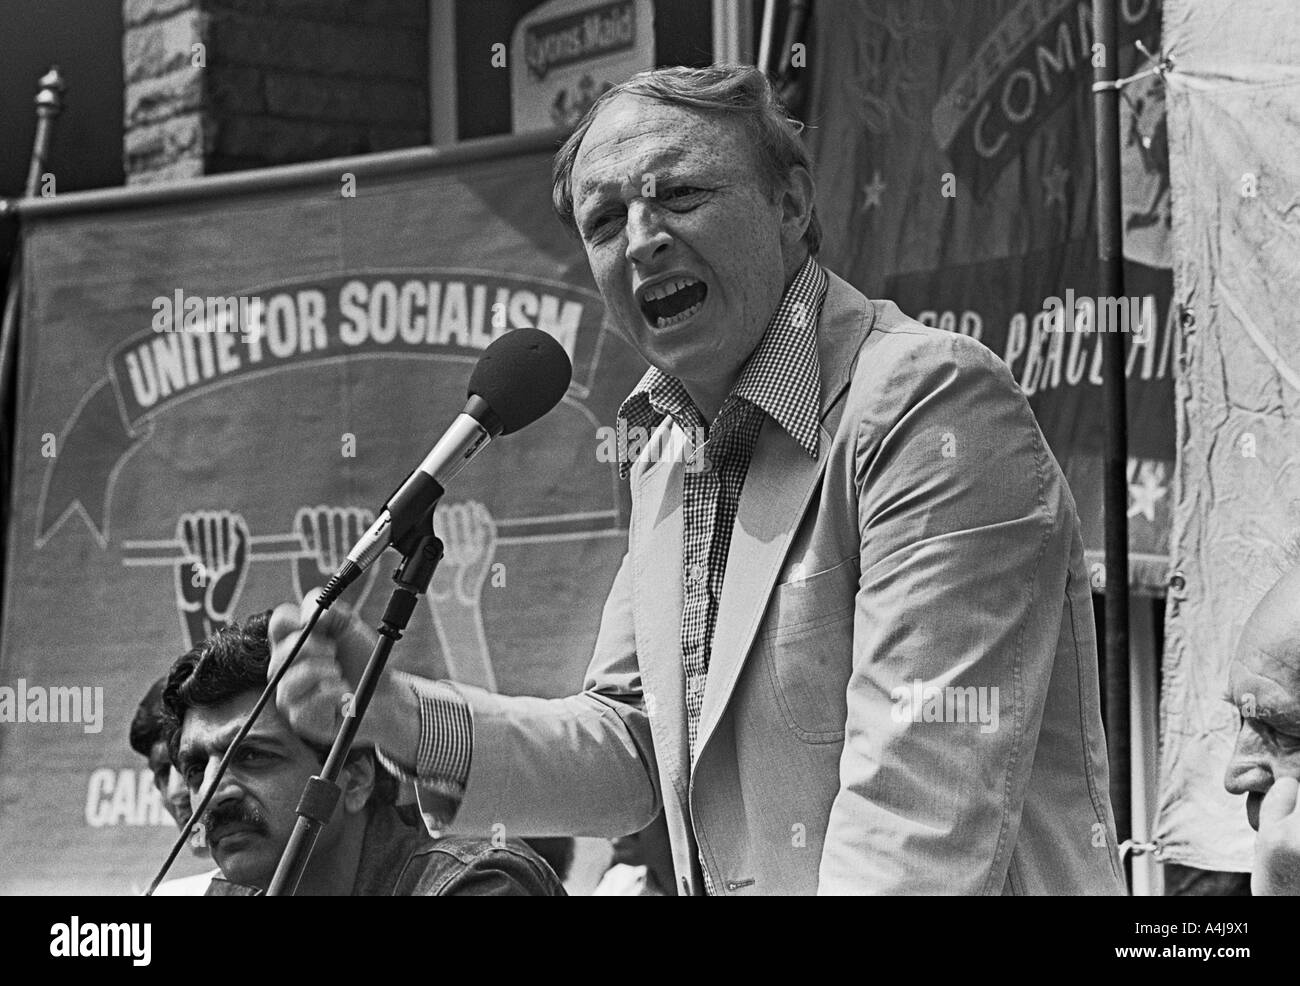 Neil Kinnock (maintenant Lord Kinnock) lors d'un rassemblement anti-racisme à Cardiff, juillet 1978. Banque D'Images